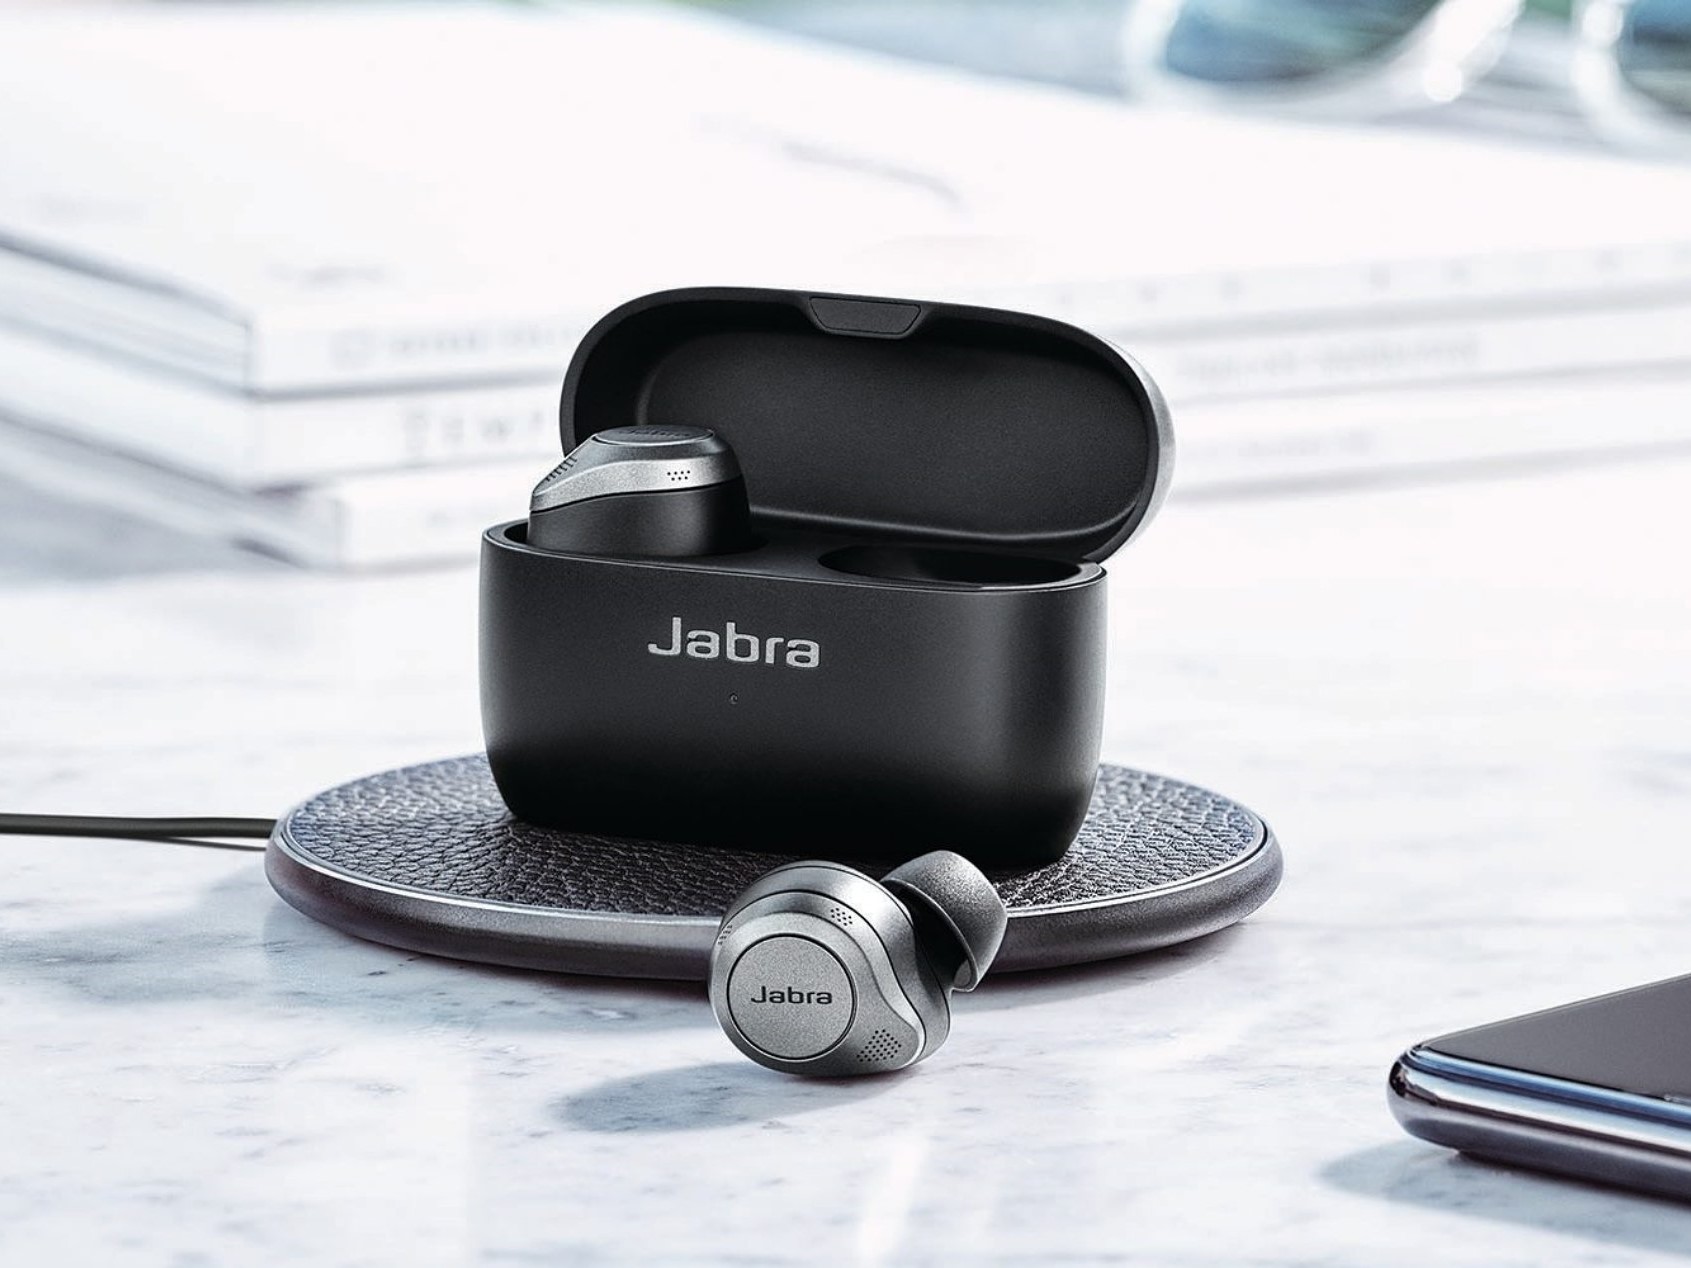 Jabra cho ra mắt siêu phẩm True Wireless chống ồn chủ động Jabra Elite 85t